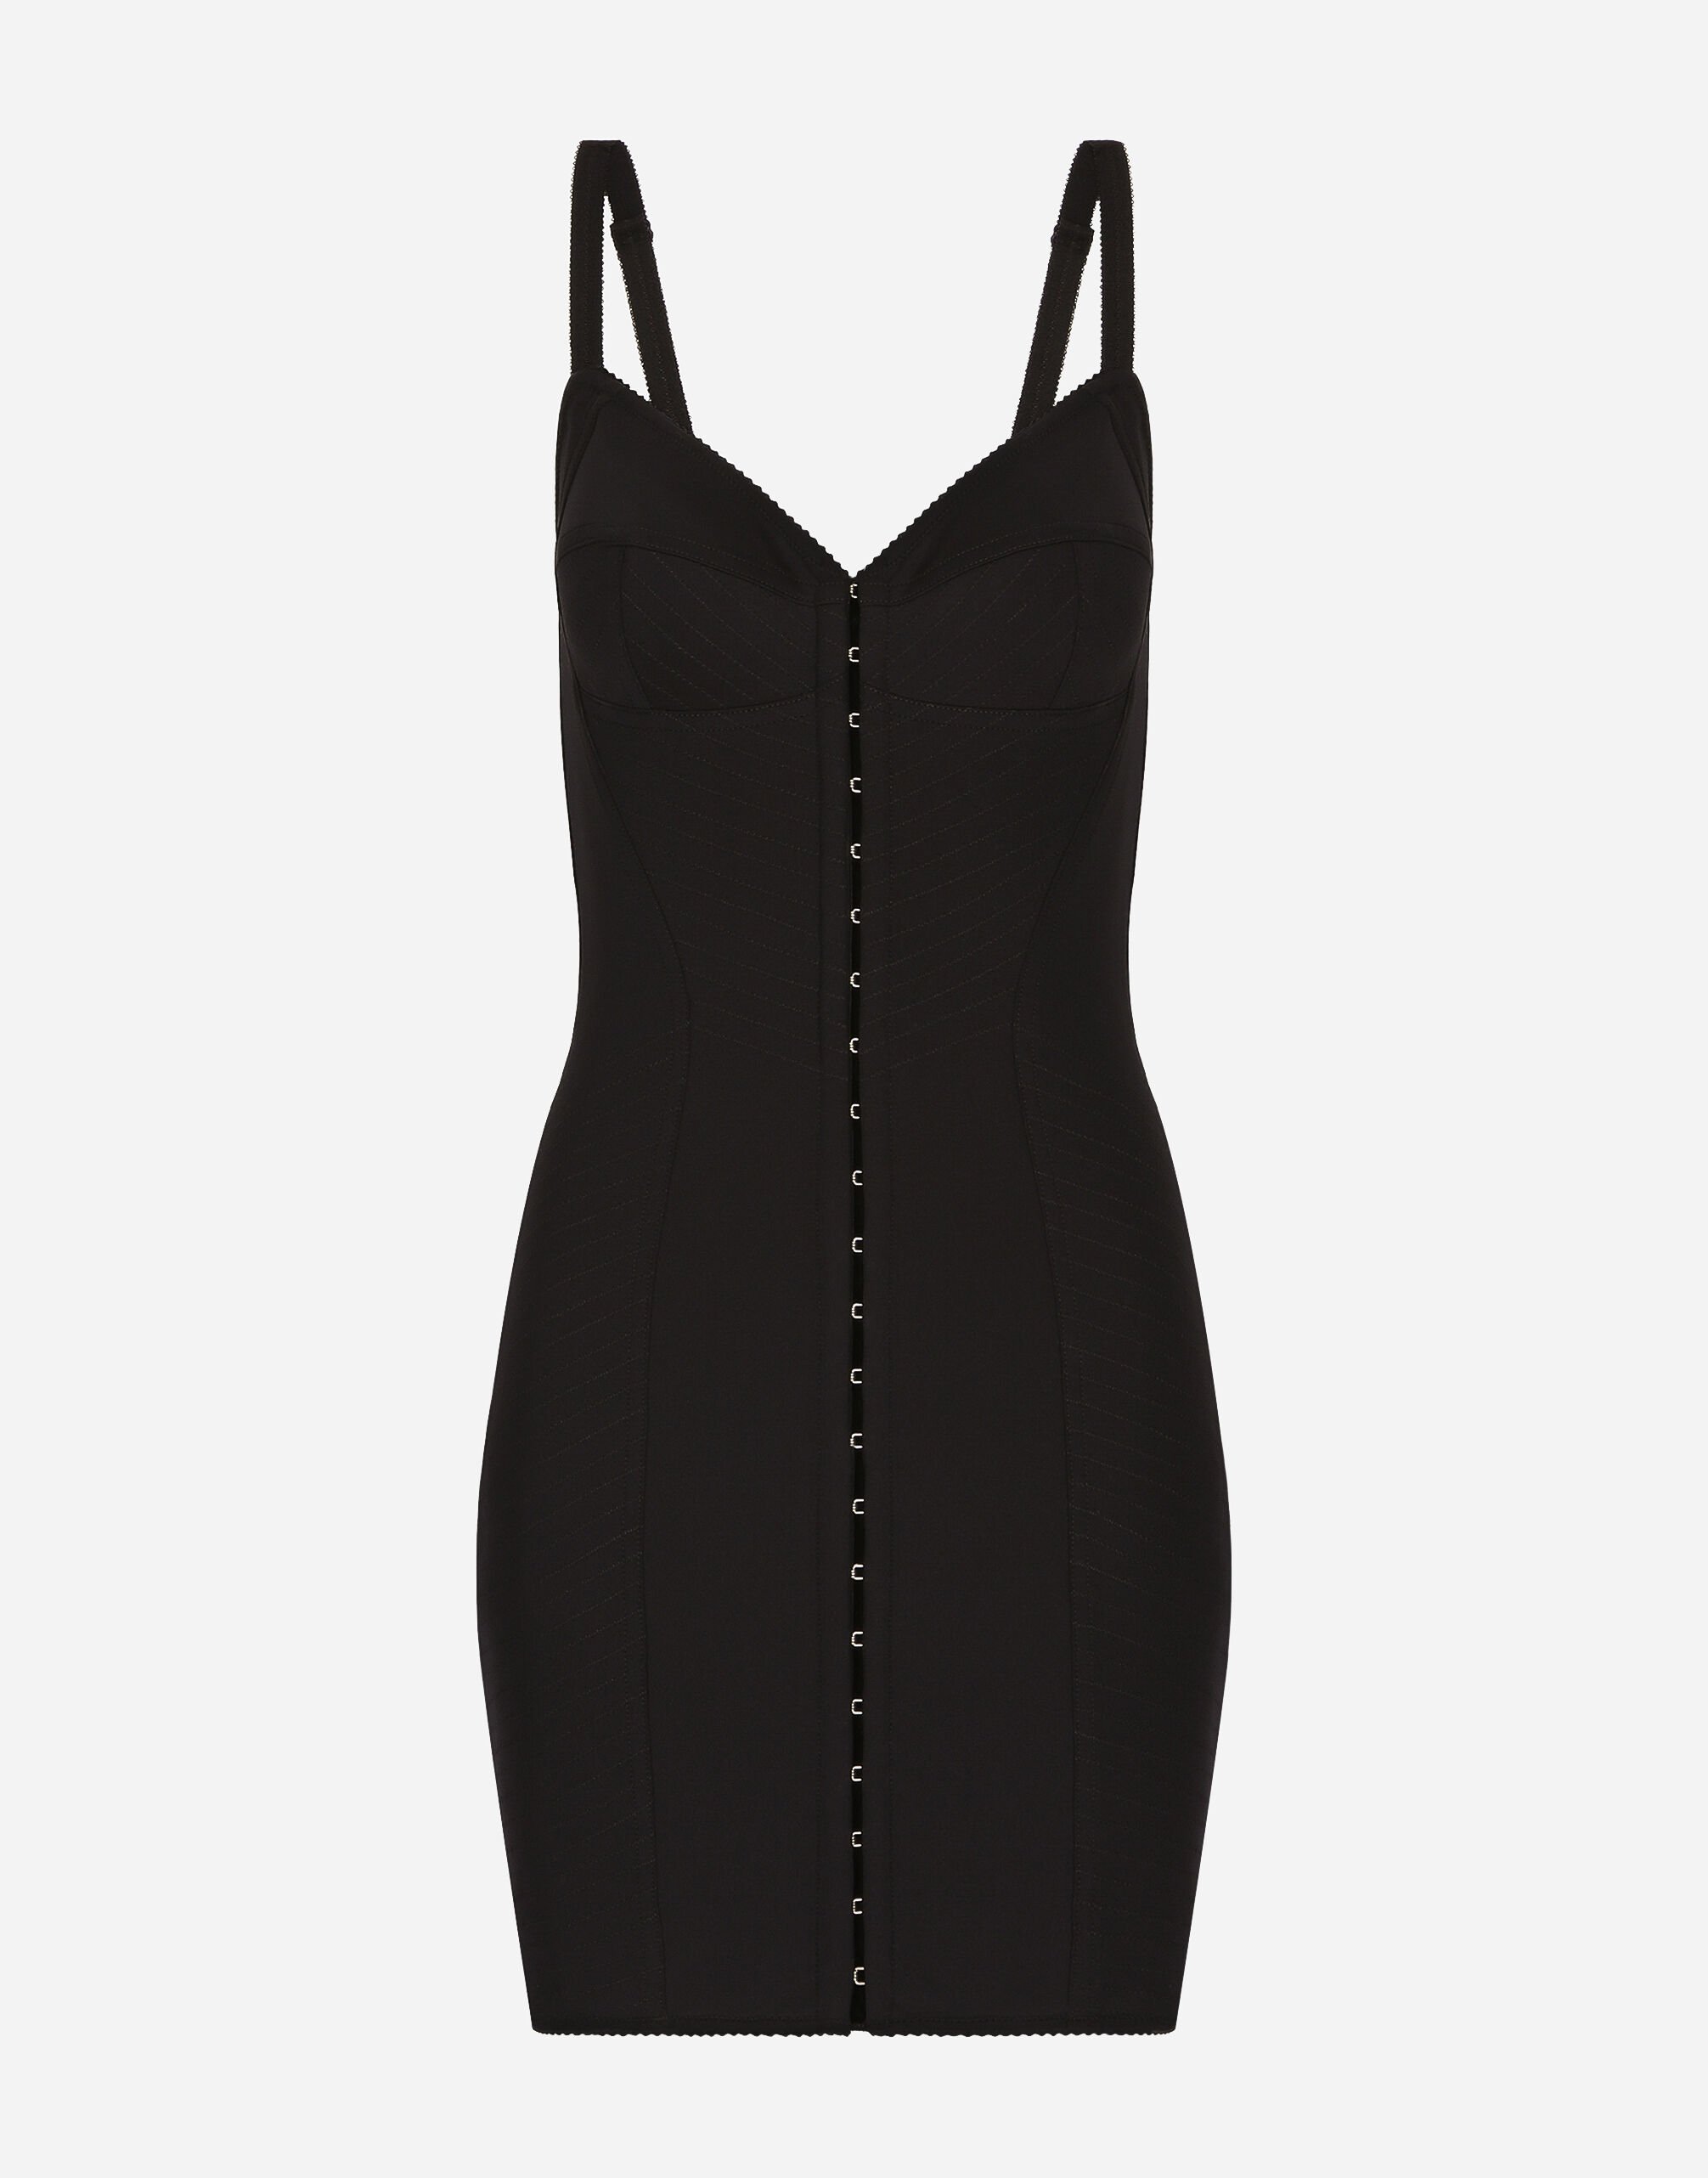 Dolce & Gabbana Short light technical jersey dress Black F6AUXTFUUBD